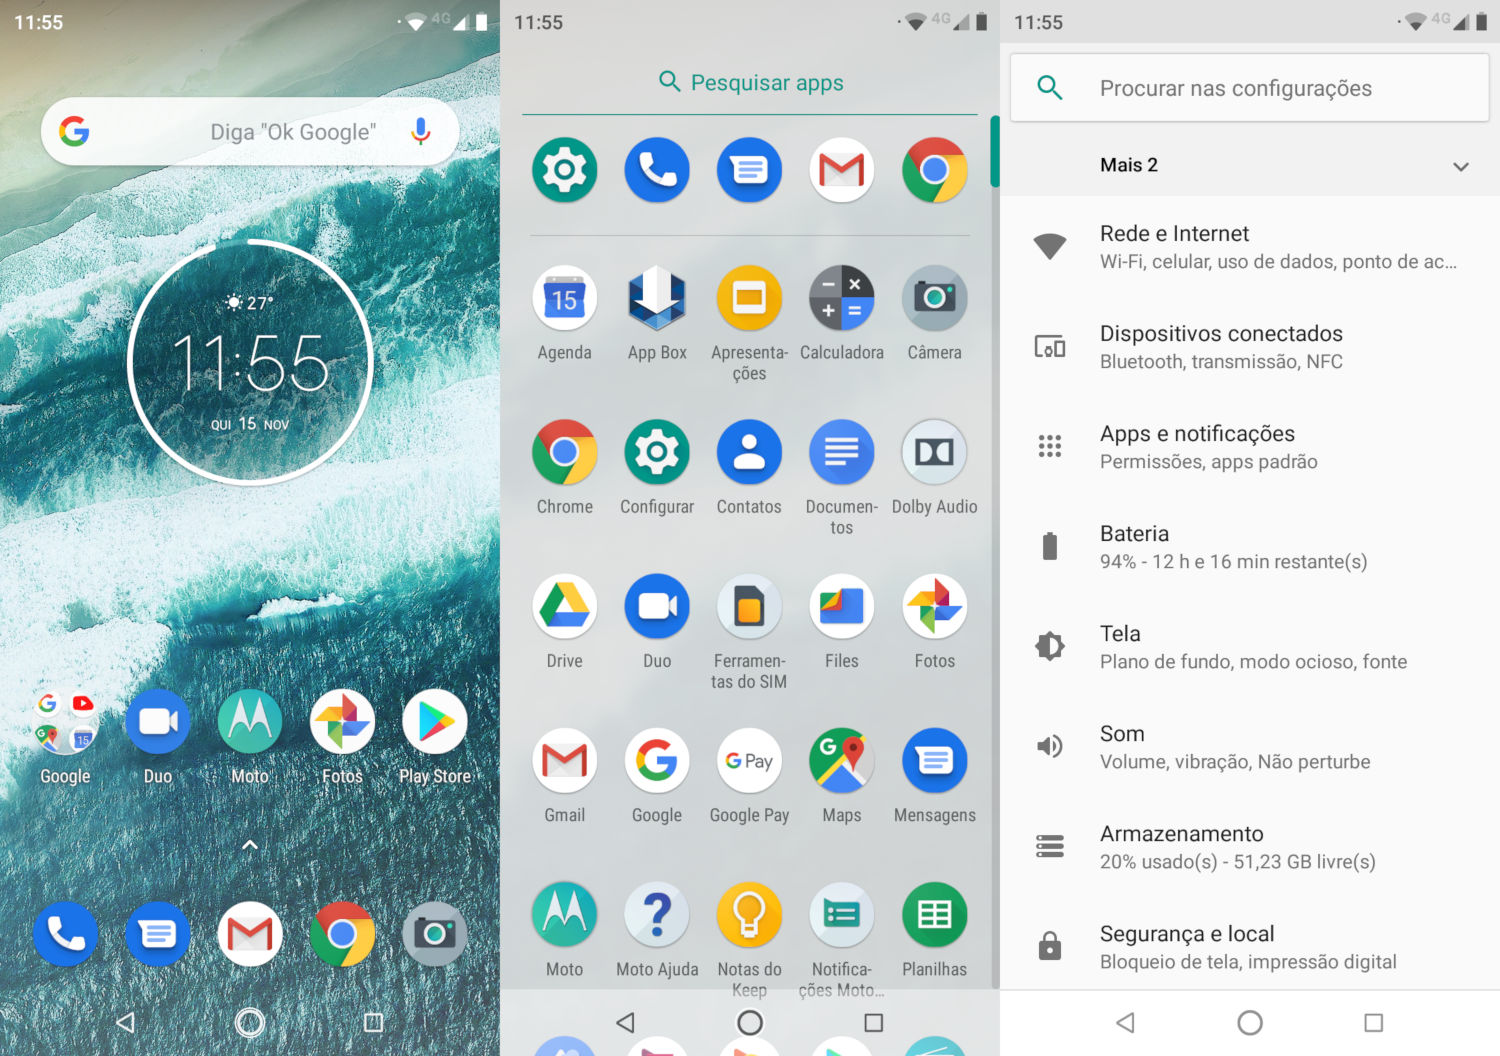 Screenshots do Motorola One: tela de início, gaveta de apps e opções de Configurações